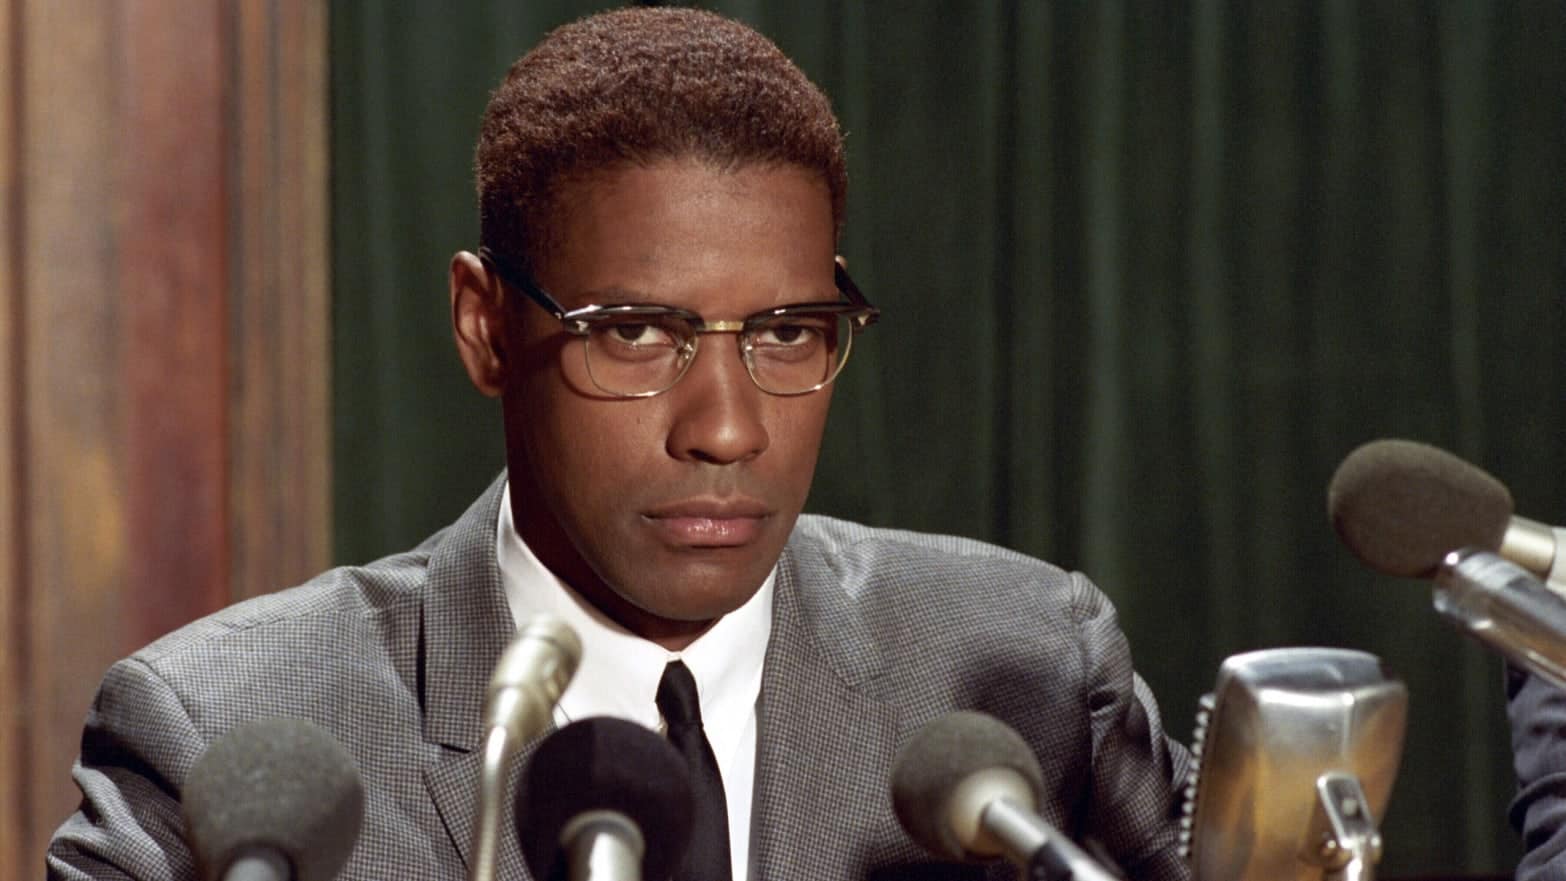 Denzel Washington as Malcolm X in the film (Credits: Warner Bros.)